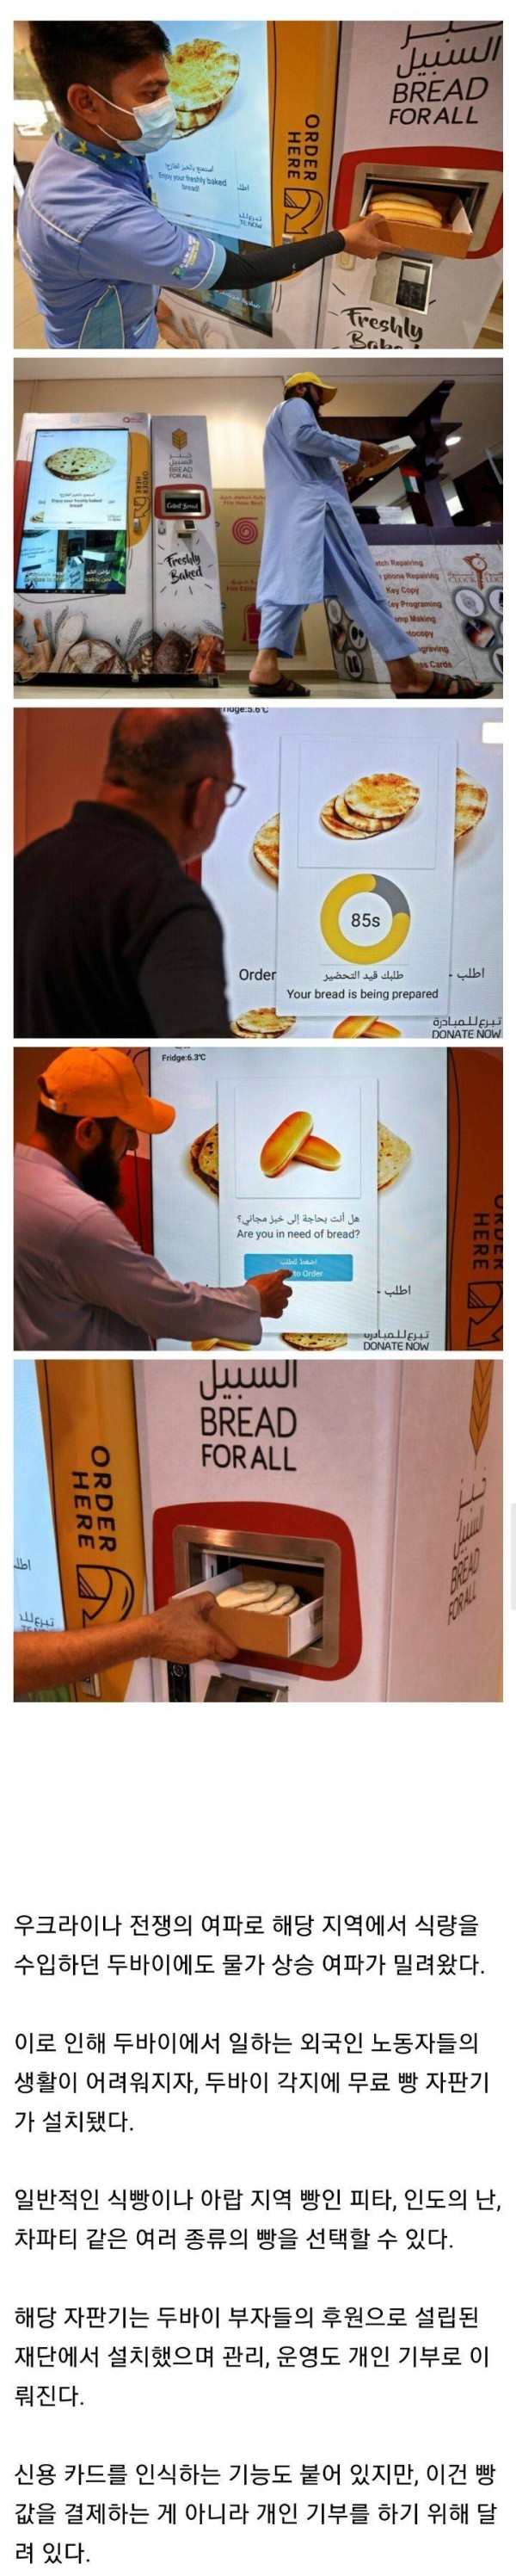 두바이 무료 빵 자판기의 비밀